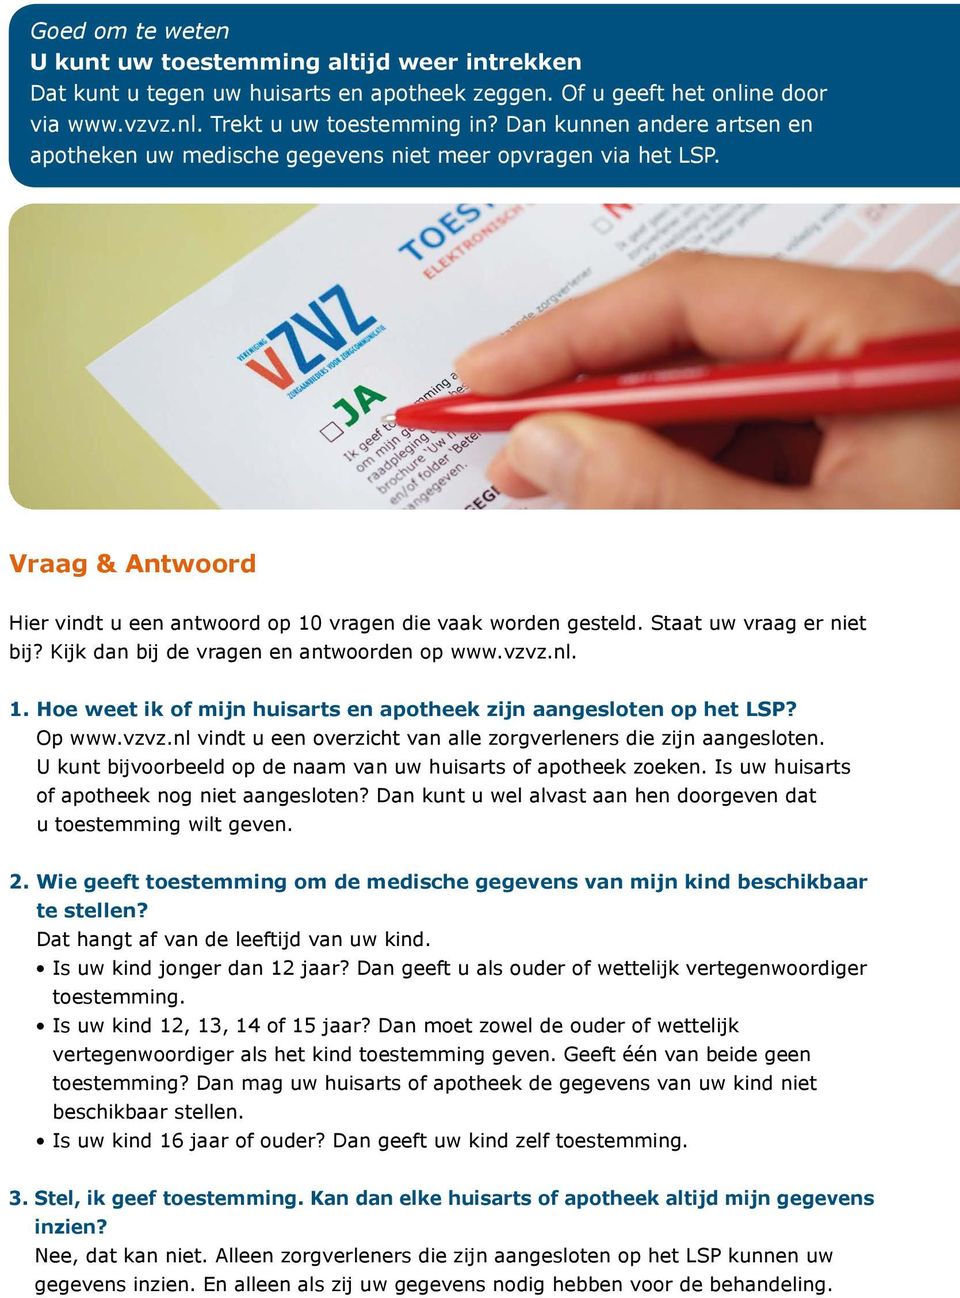 Kijk dan bij de vragen en antwoorden op www.vzvz.nl. 1. Hoe weet ik of mijn huisarts en apotheek zijn aangesloten op het LSP? Op www.vzvz.nl vindt u een overzicht van alle zorgverleners die zijn aangesloten.